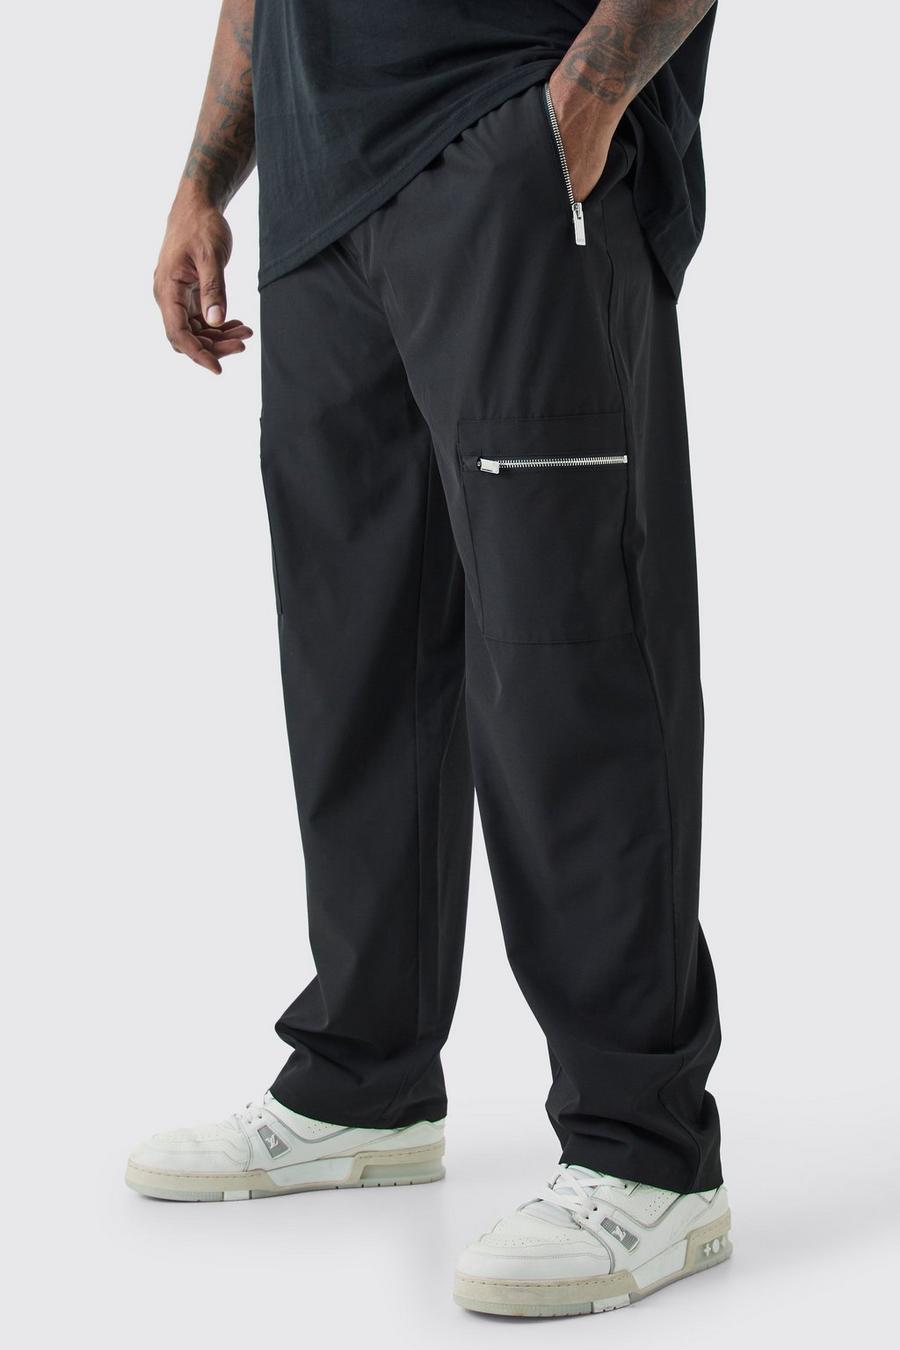 Pantalón Plus cargo utilitario elástico técnico con cintura elástica, Black image number 1